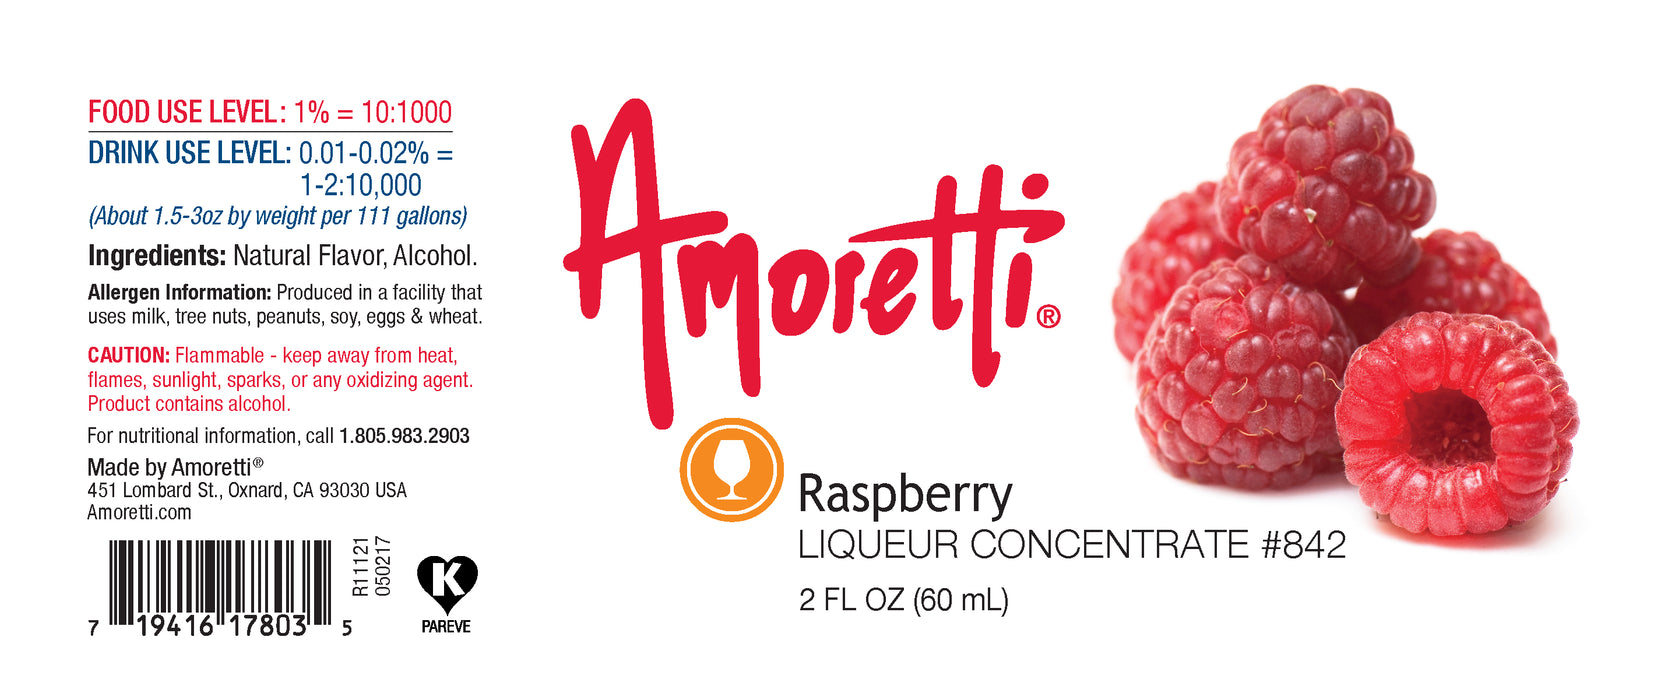 Raspberry Liqueur Concentrate